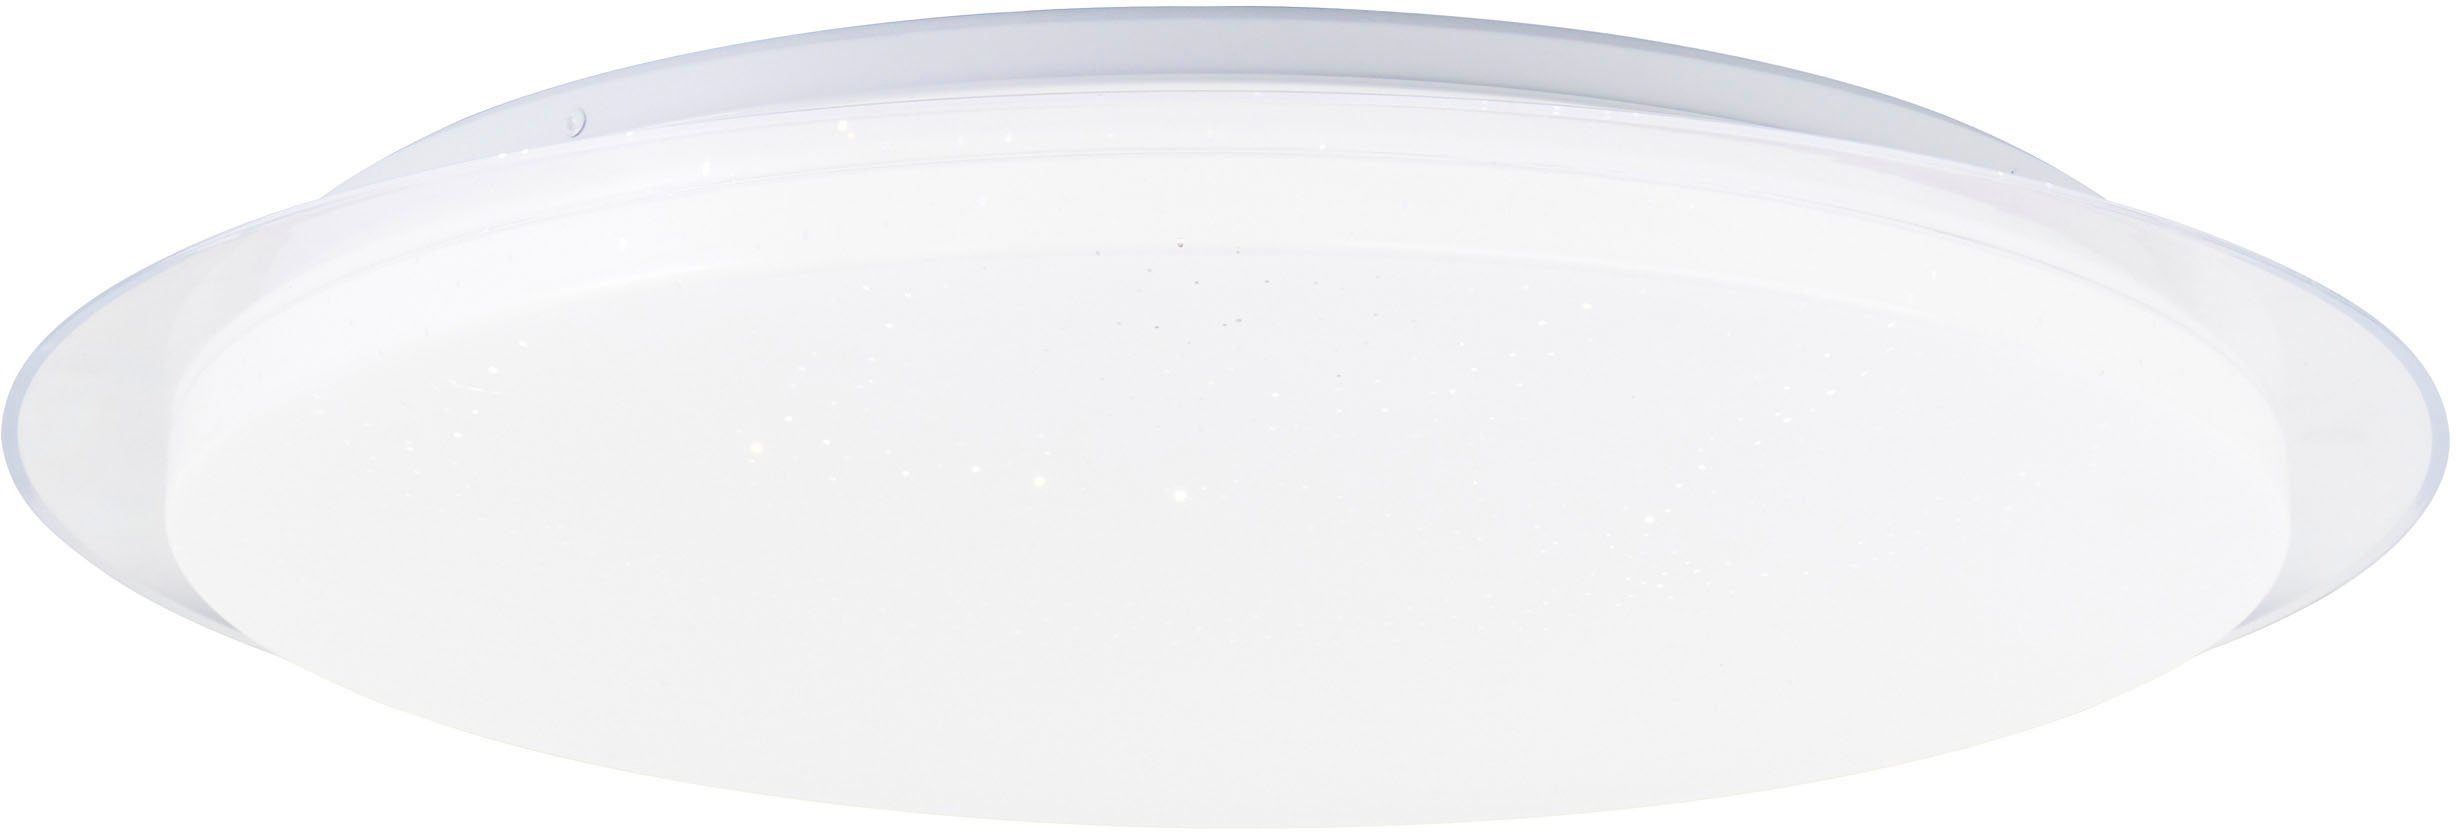 BreLight LED Wandleuchte Vittoria, CCT - über Fernbedienung, Dimmfunktion, Nachtlichtfunktion, Timerfunktion, LED fest integriert, warmweiß - kaltweiß, D 57 cm, 3800 lm, 3000-6500 K, CCT, dimmbar, weiß